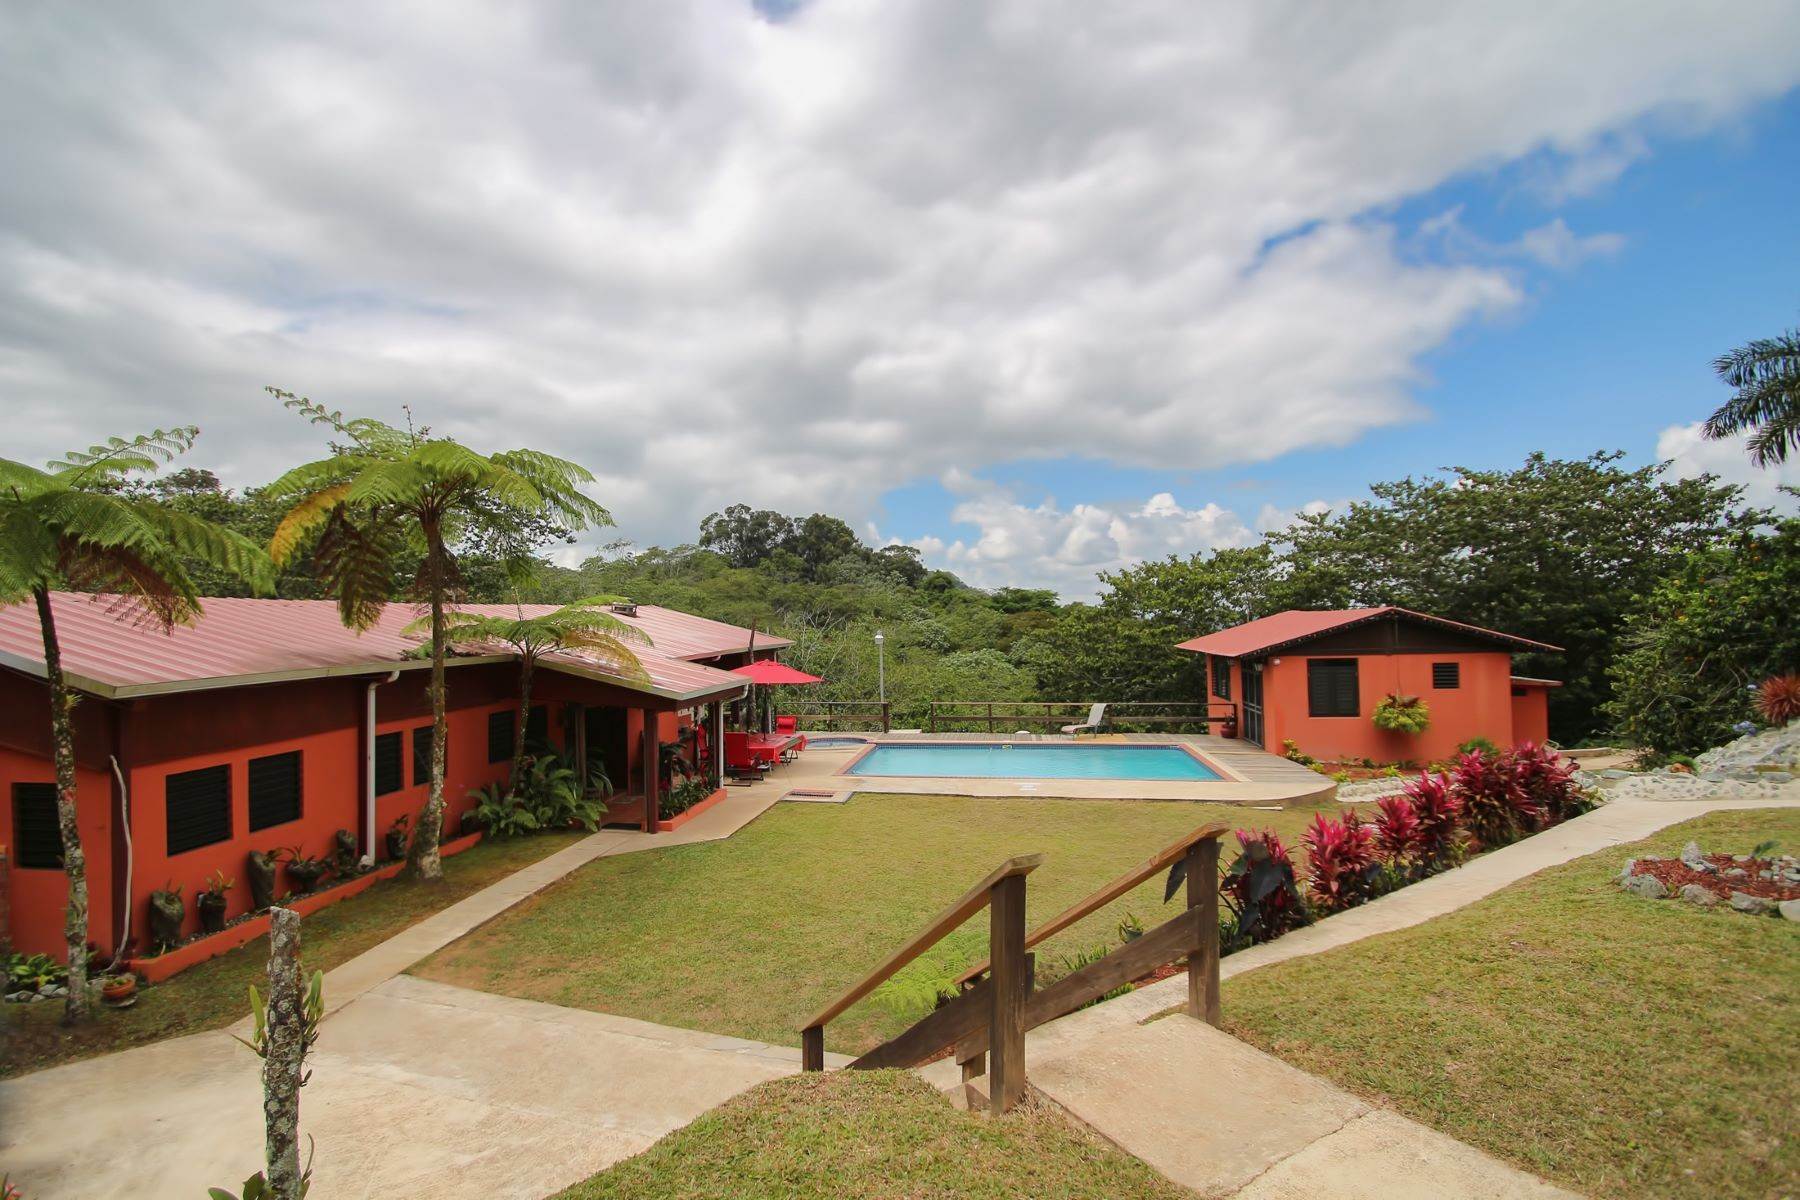 Farm and Ranch Properties for Sale at Hacienda Las Nubes Adjuntas, 00601 Puerto Rico